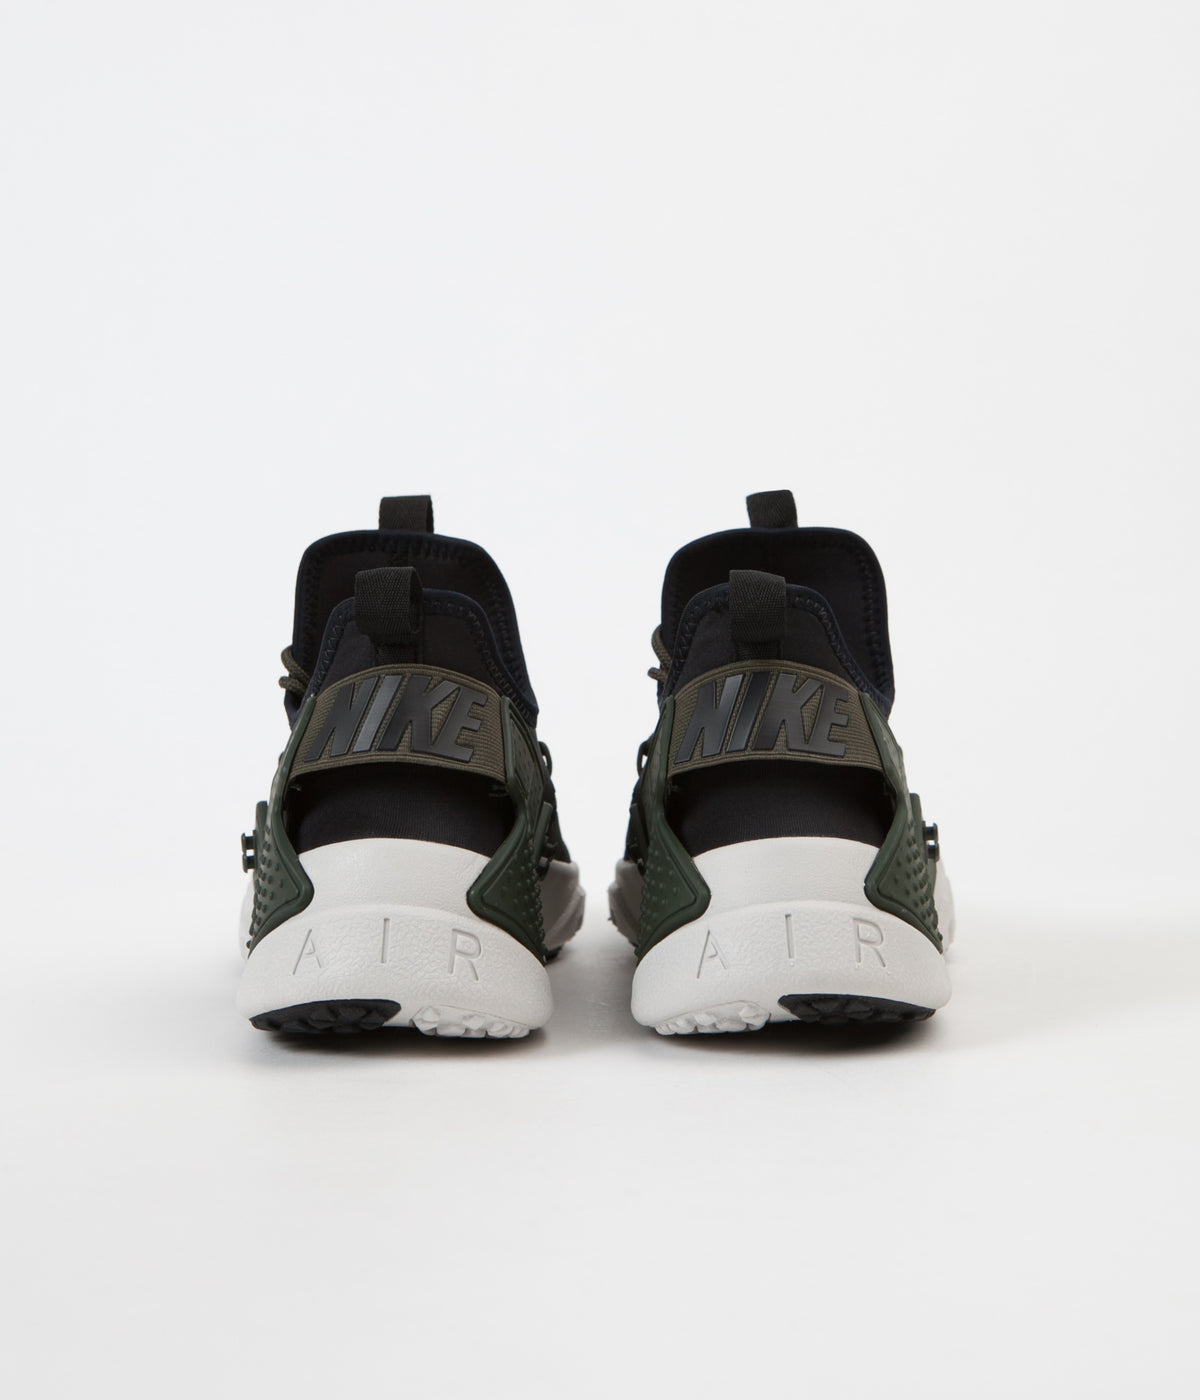 Nike Air Huarache Drift Shoes - Sequoia 